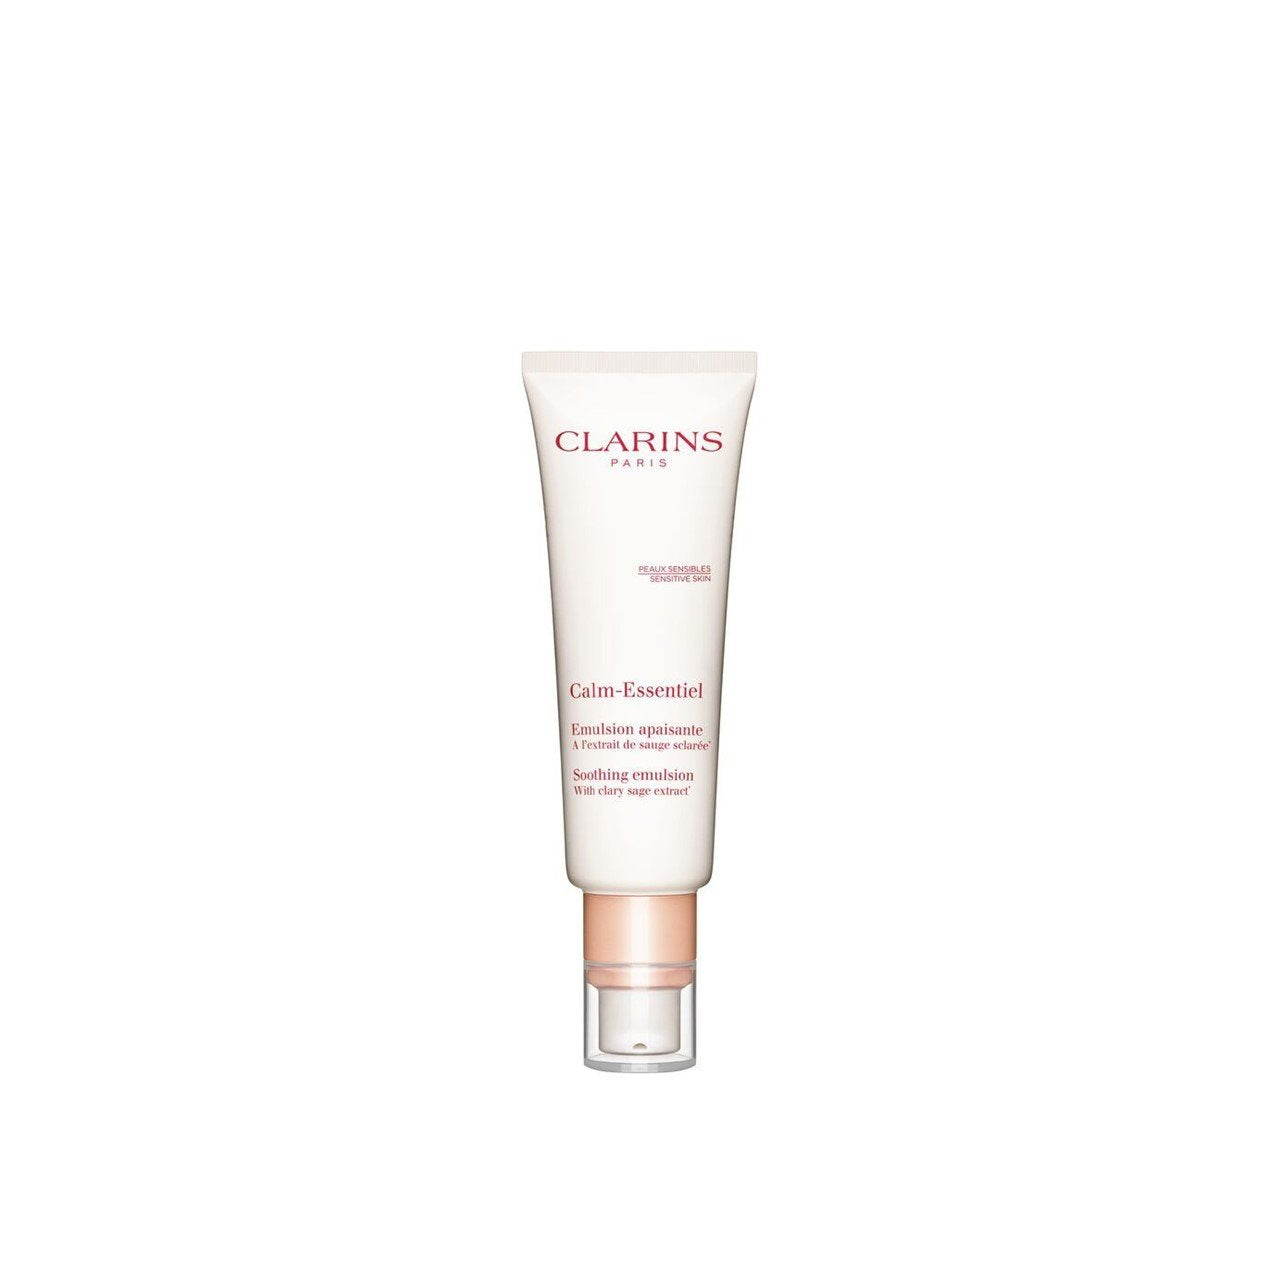 Clarins Calm-Essentiel Émulsion Apaisante 50 ml